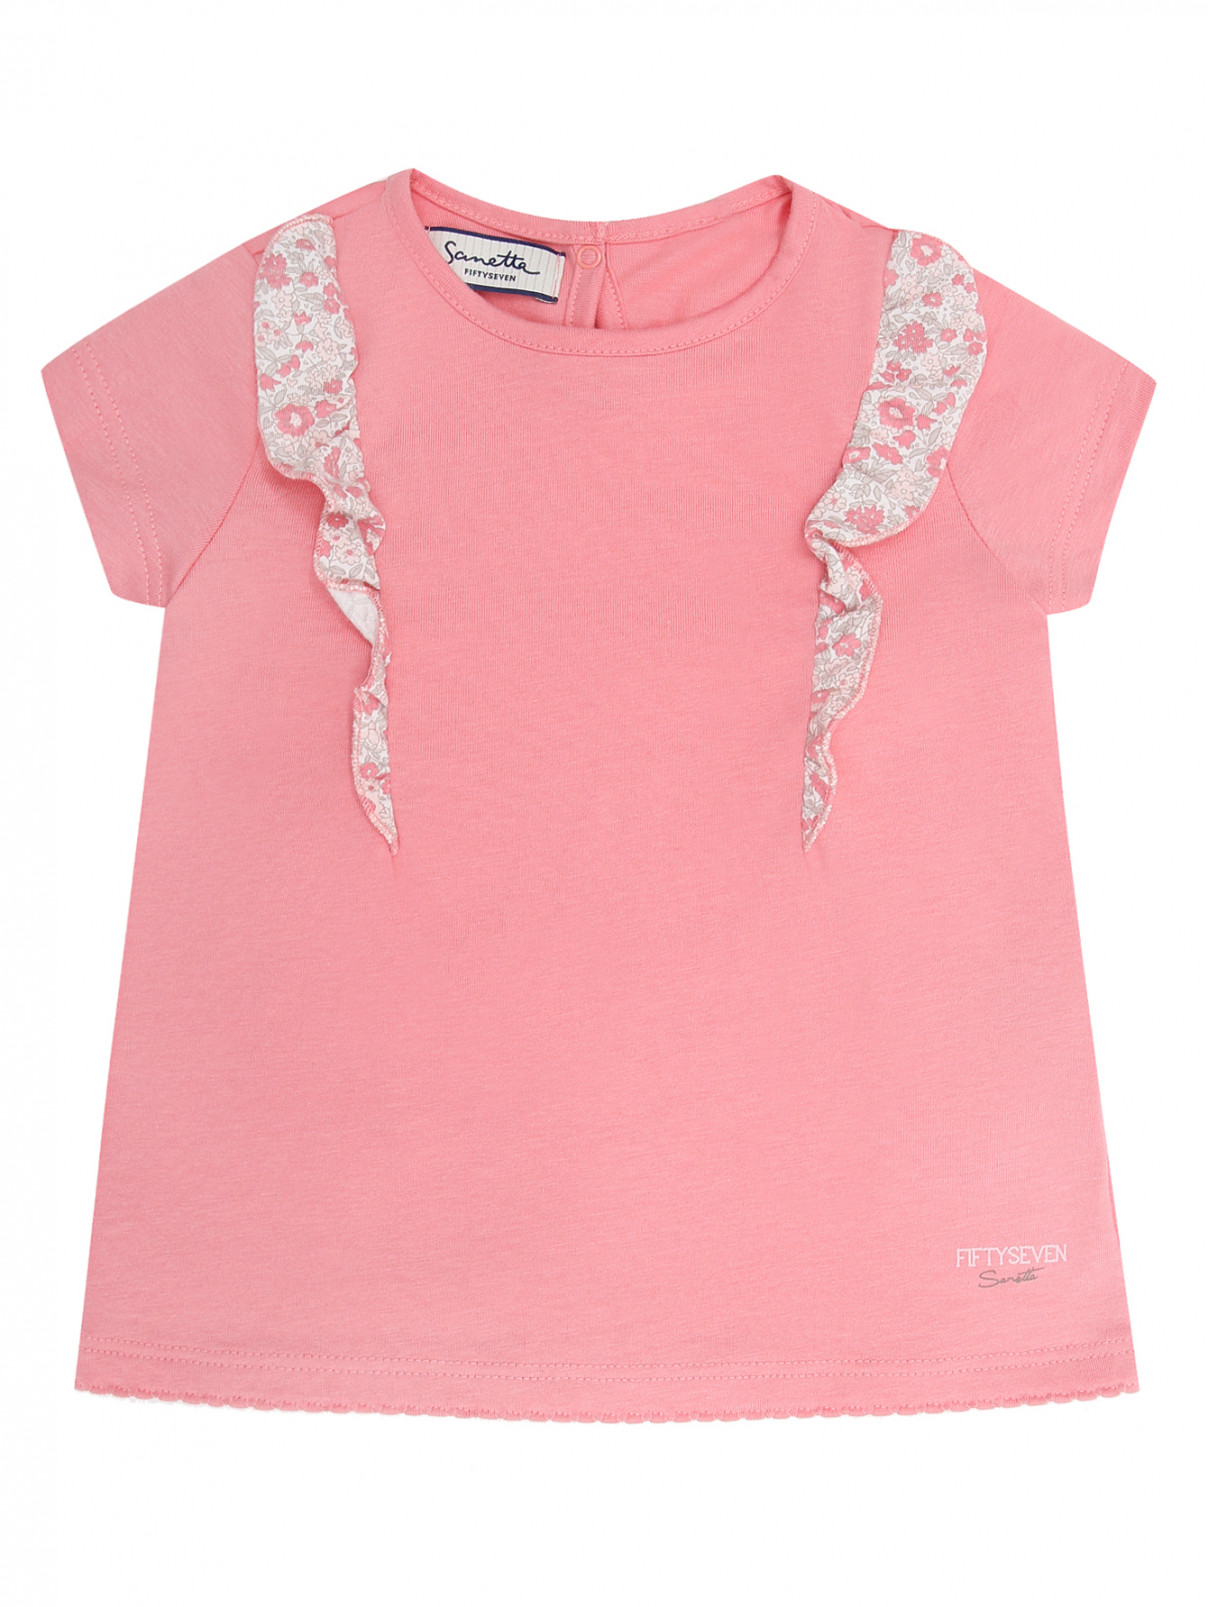 Трикотажная футболка с оборками Sanetta  –  Общий вид  – Цвет:  Розовый